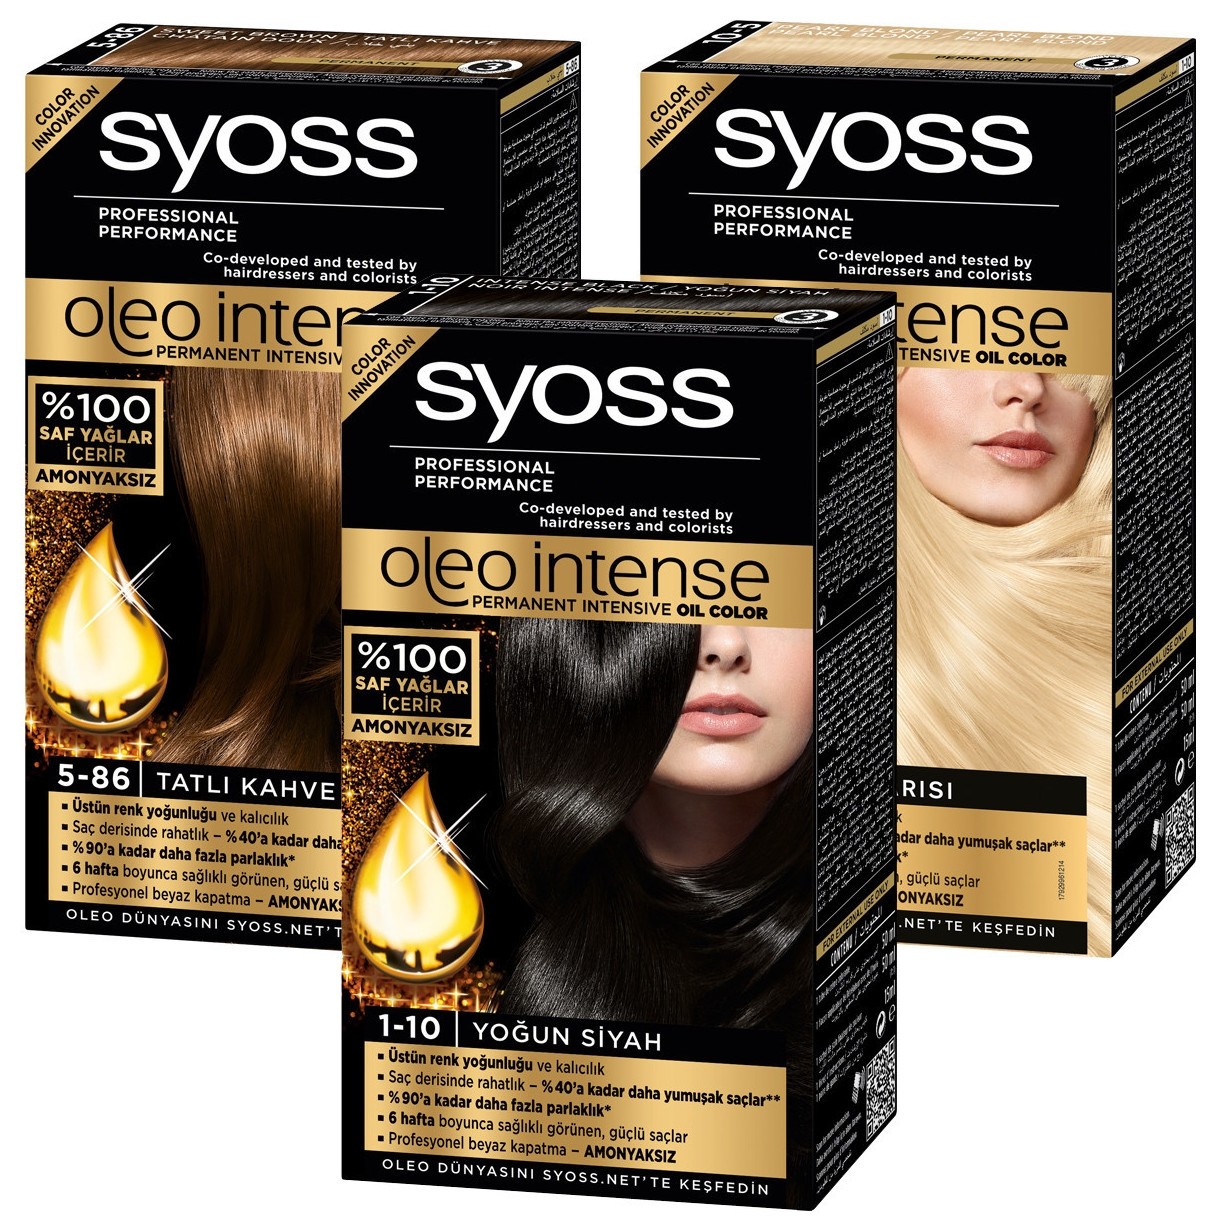 Краска для волос oleo intense 3-10 глубокий каштановый syoss